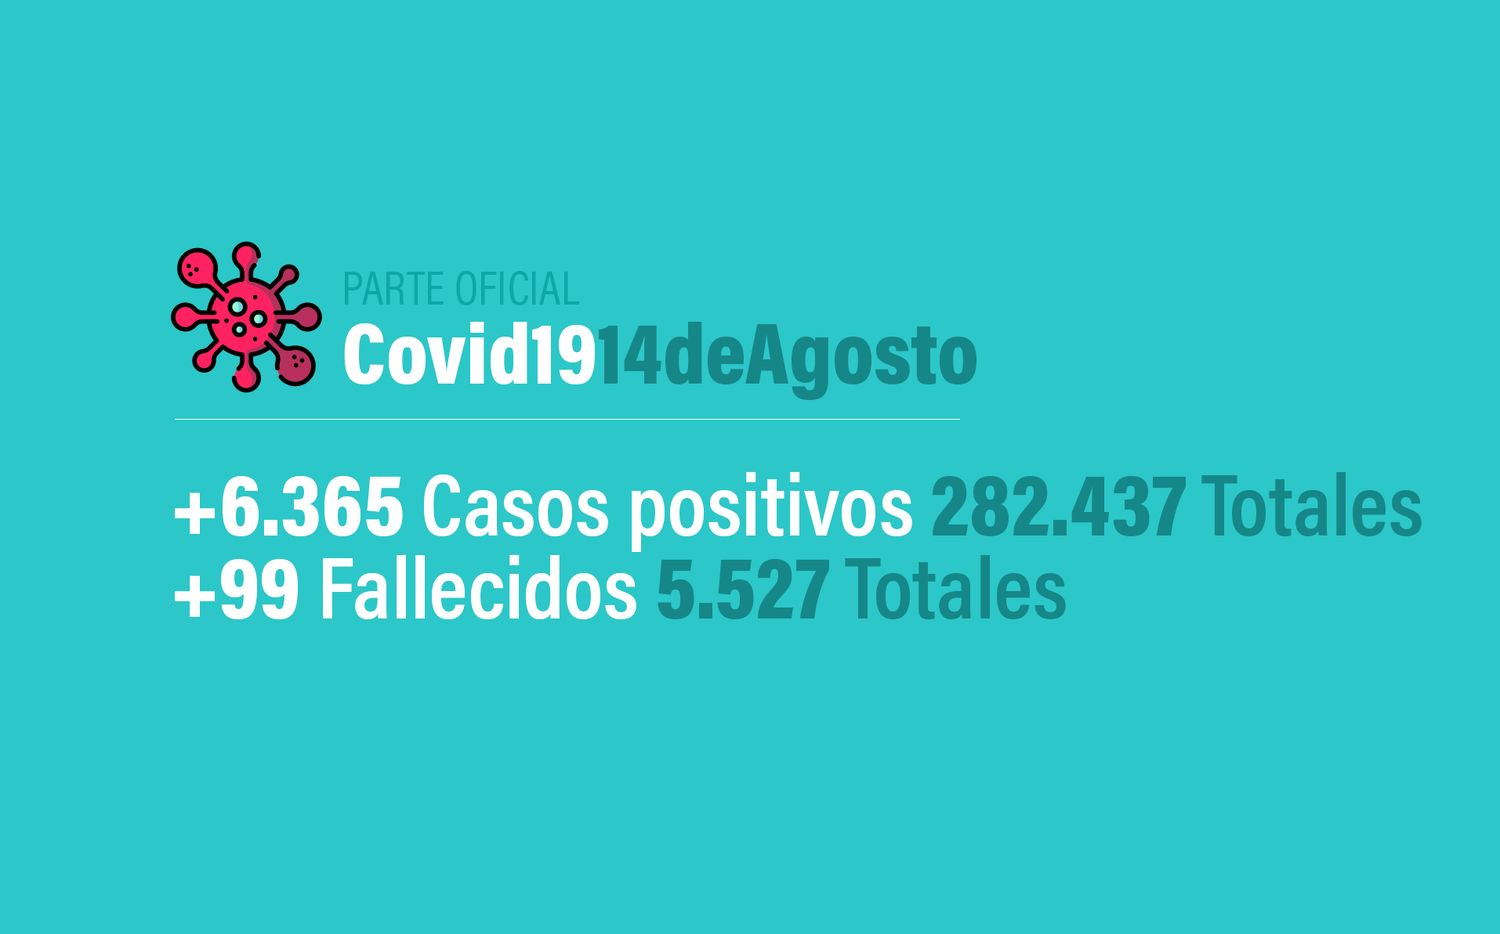 Coronavirus en Argentina: 6365 nuevos casos, 282437 confirmados y 5527 muertes, al 14 de agosto